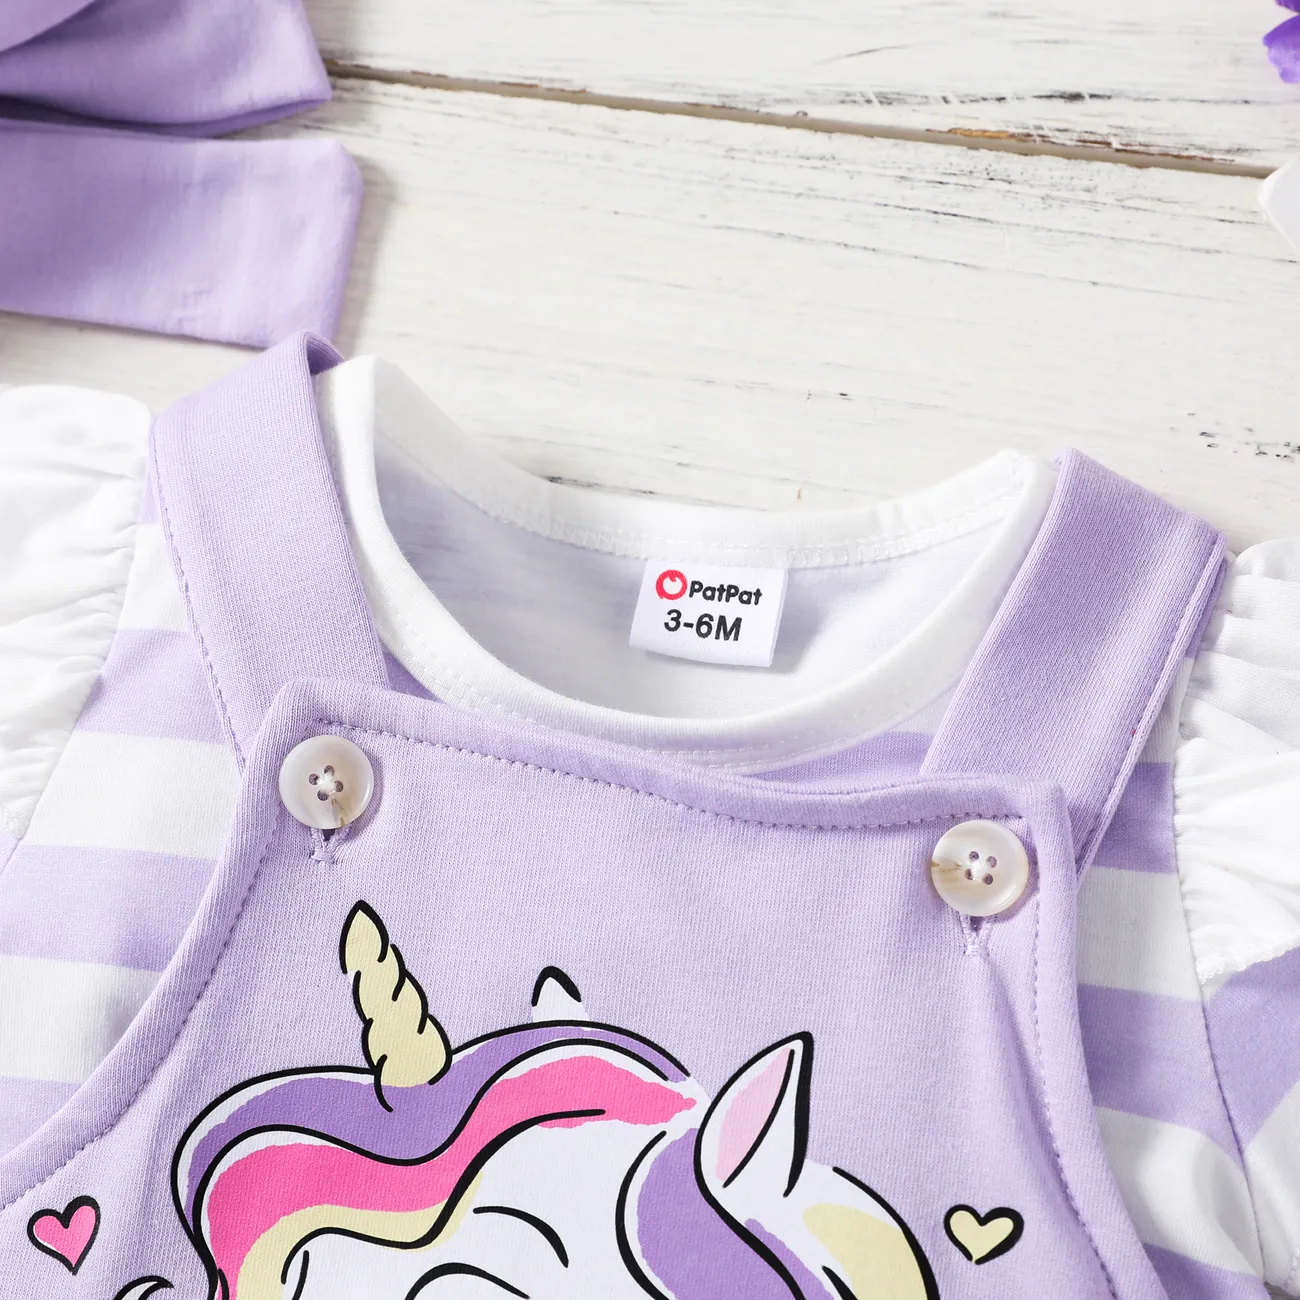 3件 嬰兒 女 獨角獸 甜美 短袖 嬰兒套裝 紫色 big image 1